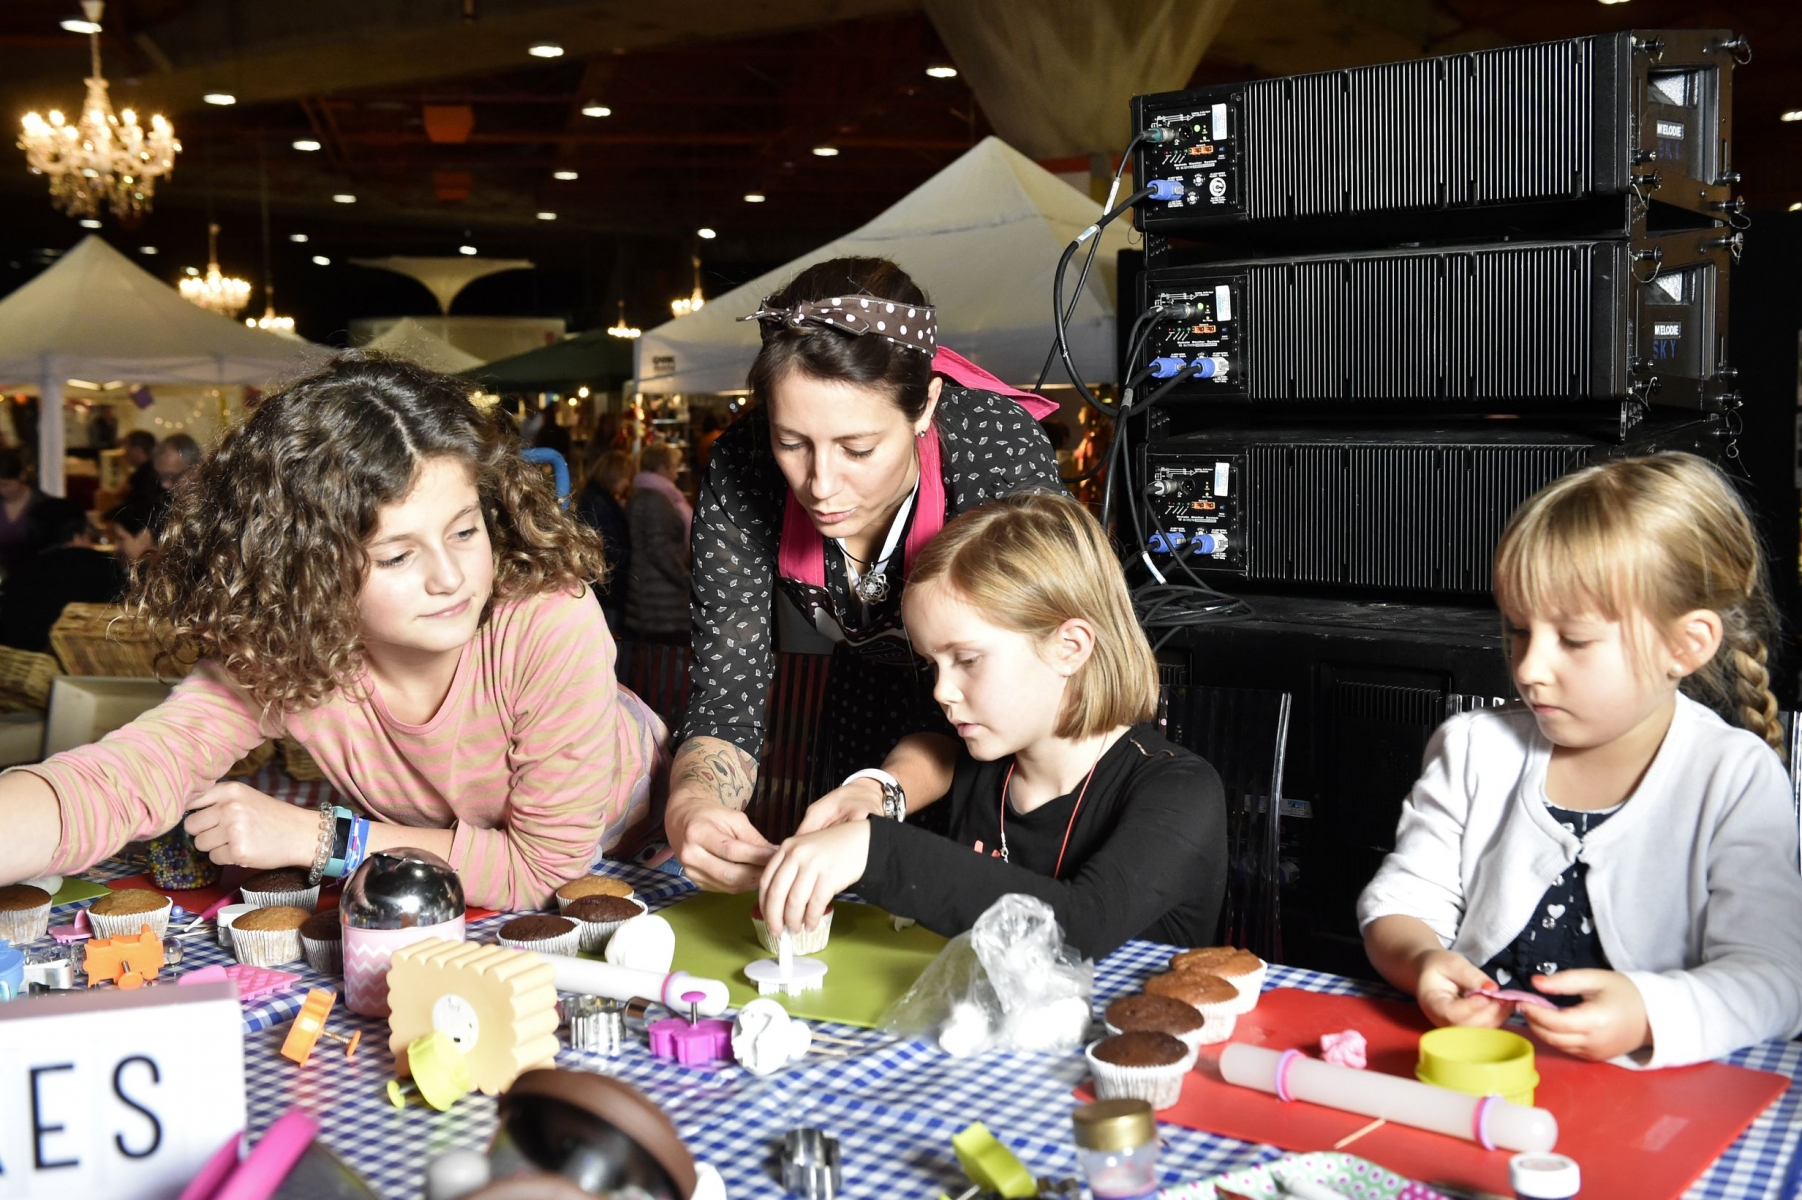 Jeudi, l'atelier pour enfants de décoration de Cupcakes animé par Angélique Neyroud (The Cupcakery) a contribué à parfaitement lancer le 4ème Marché des saveurs et artisans. Qui promet bien d'autres temps forts d'ici à dimanche.